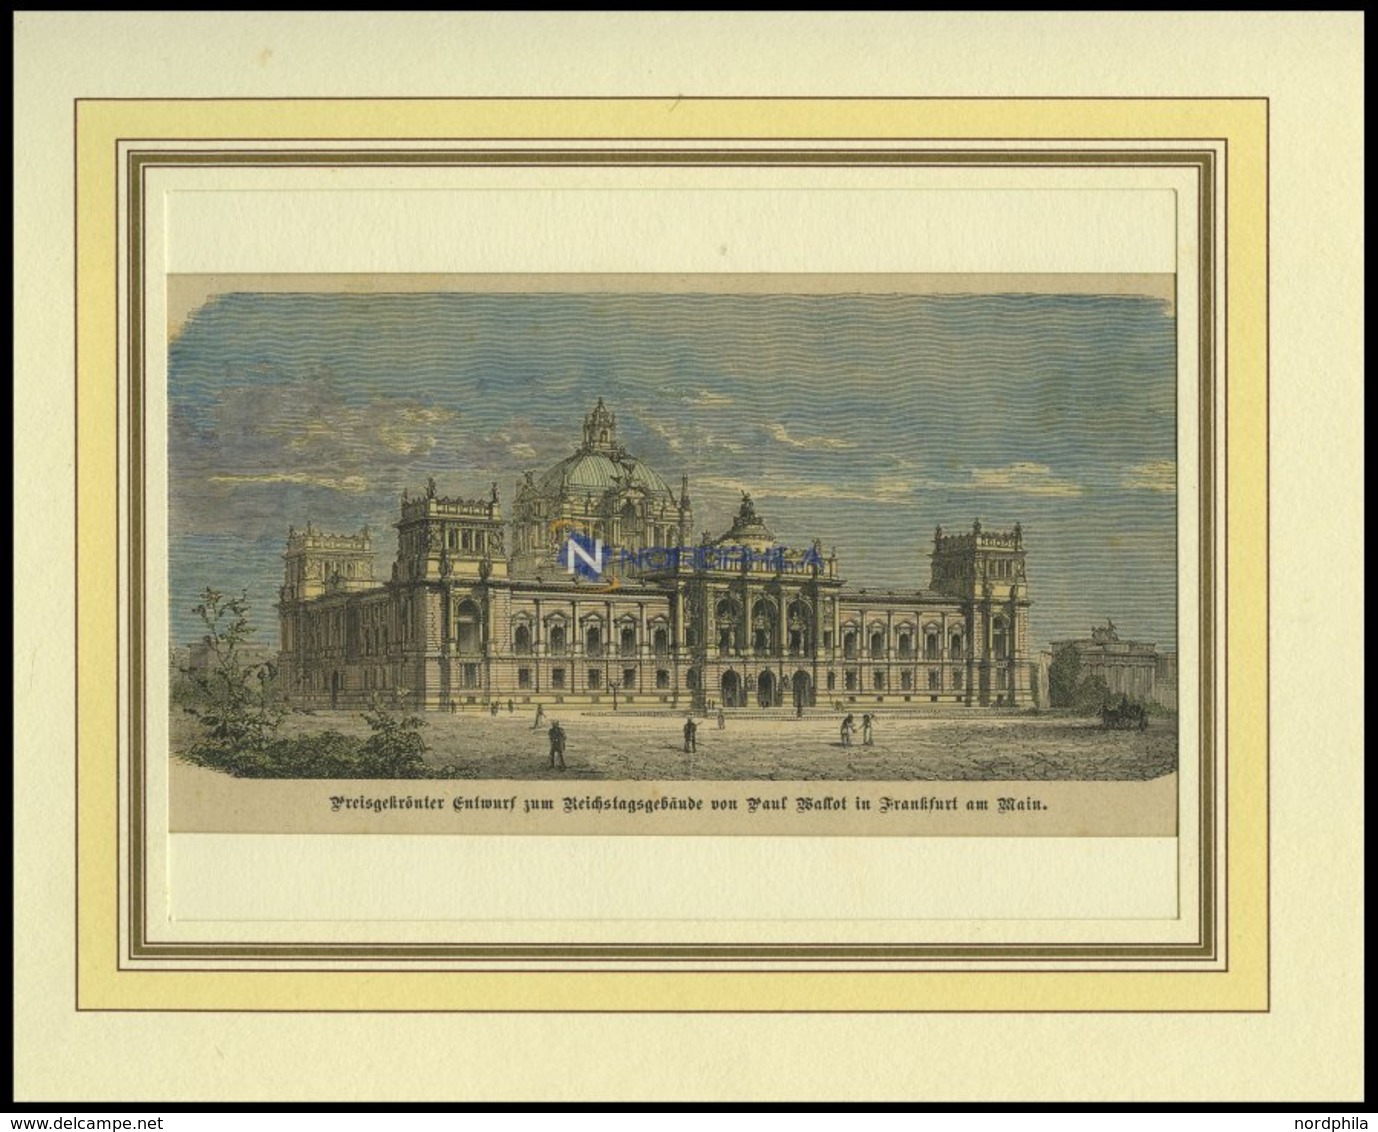 FRANKFURT/MAIN: Preisgekrönter Entwurf Zum Reichstagsgebäude, Kolorierter Holzstich Um 1880 - Lithographien